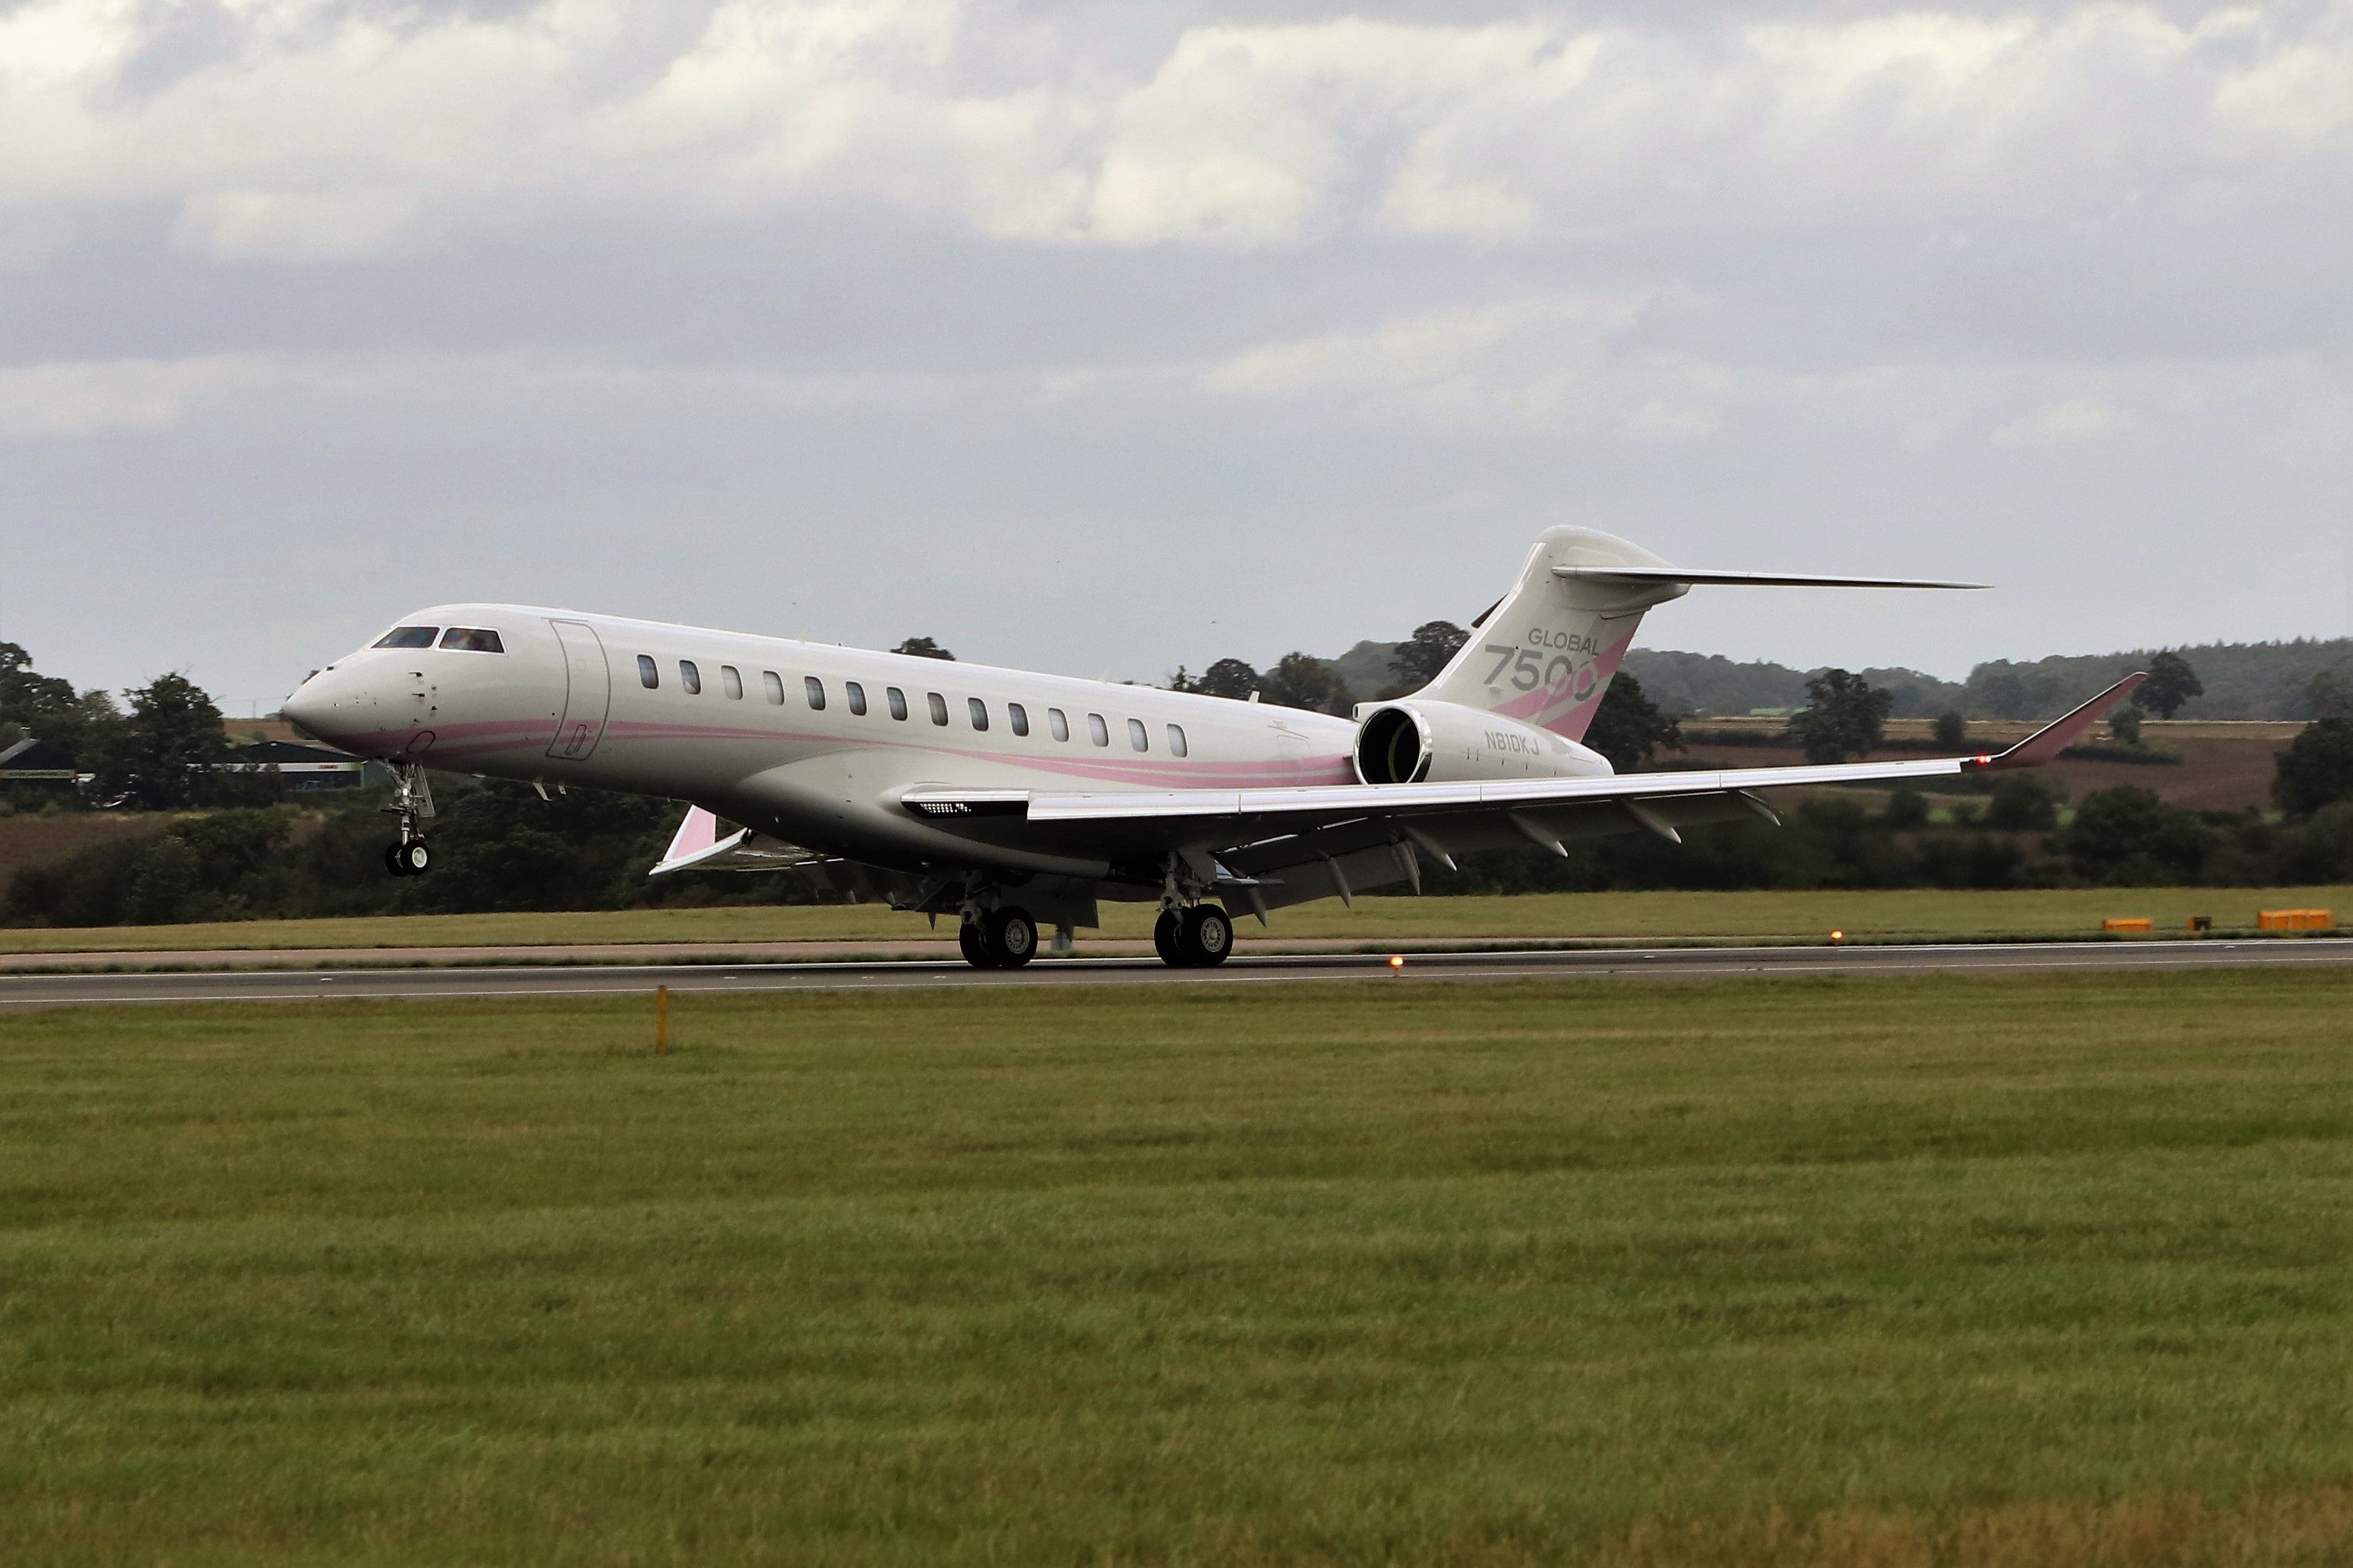 Kylie Jenner's Bombardier Global 7500 landing  